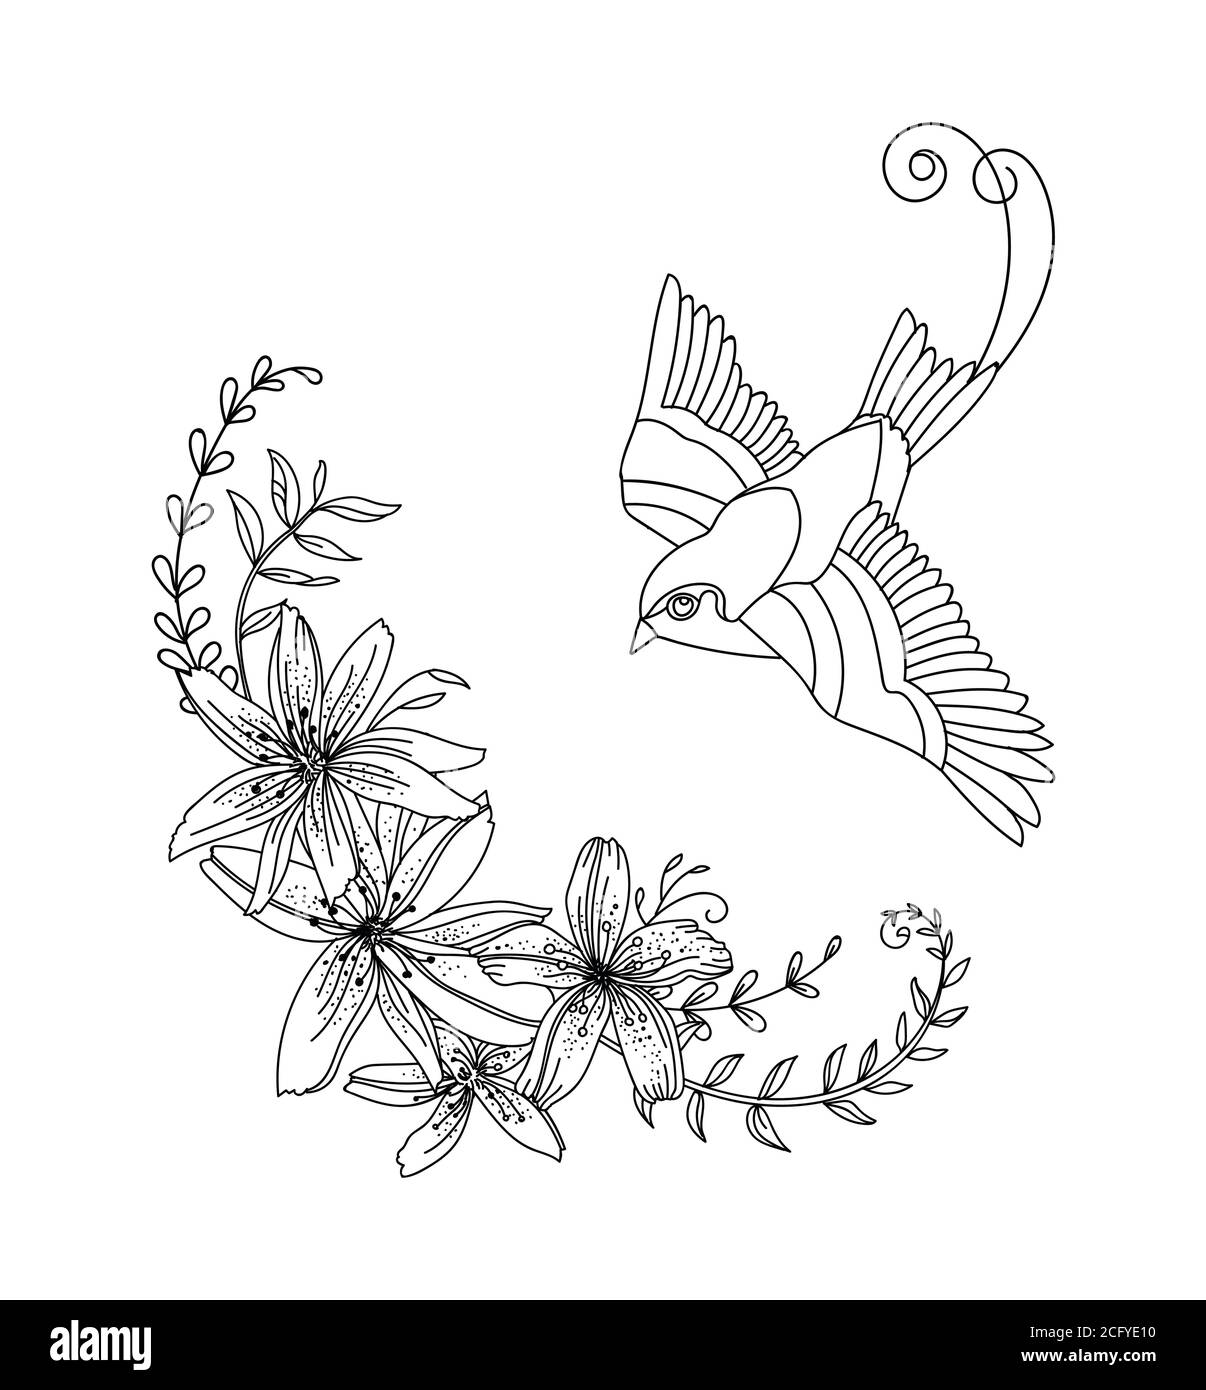 Linea vettoriale arte uccelli e fiori. Illustrazione decorativa del contorno nero isolata su bianco. Modello monocromatico disegnato a mano vettoriale per colorare il libro, noi Illustrazione Vettoriale